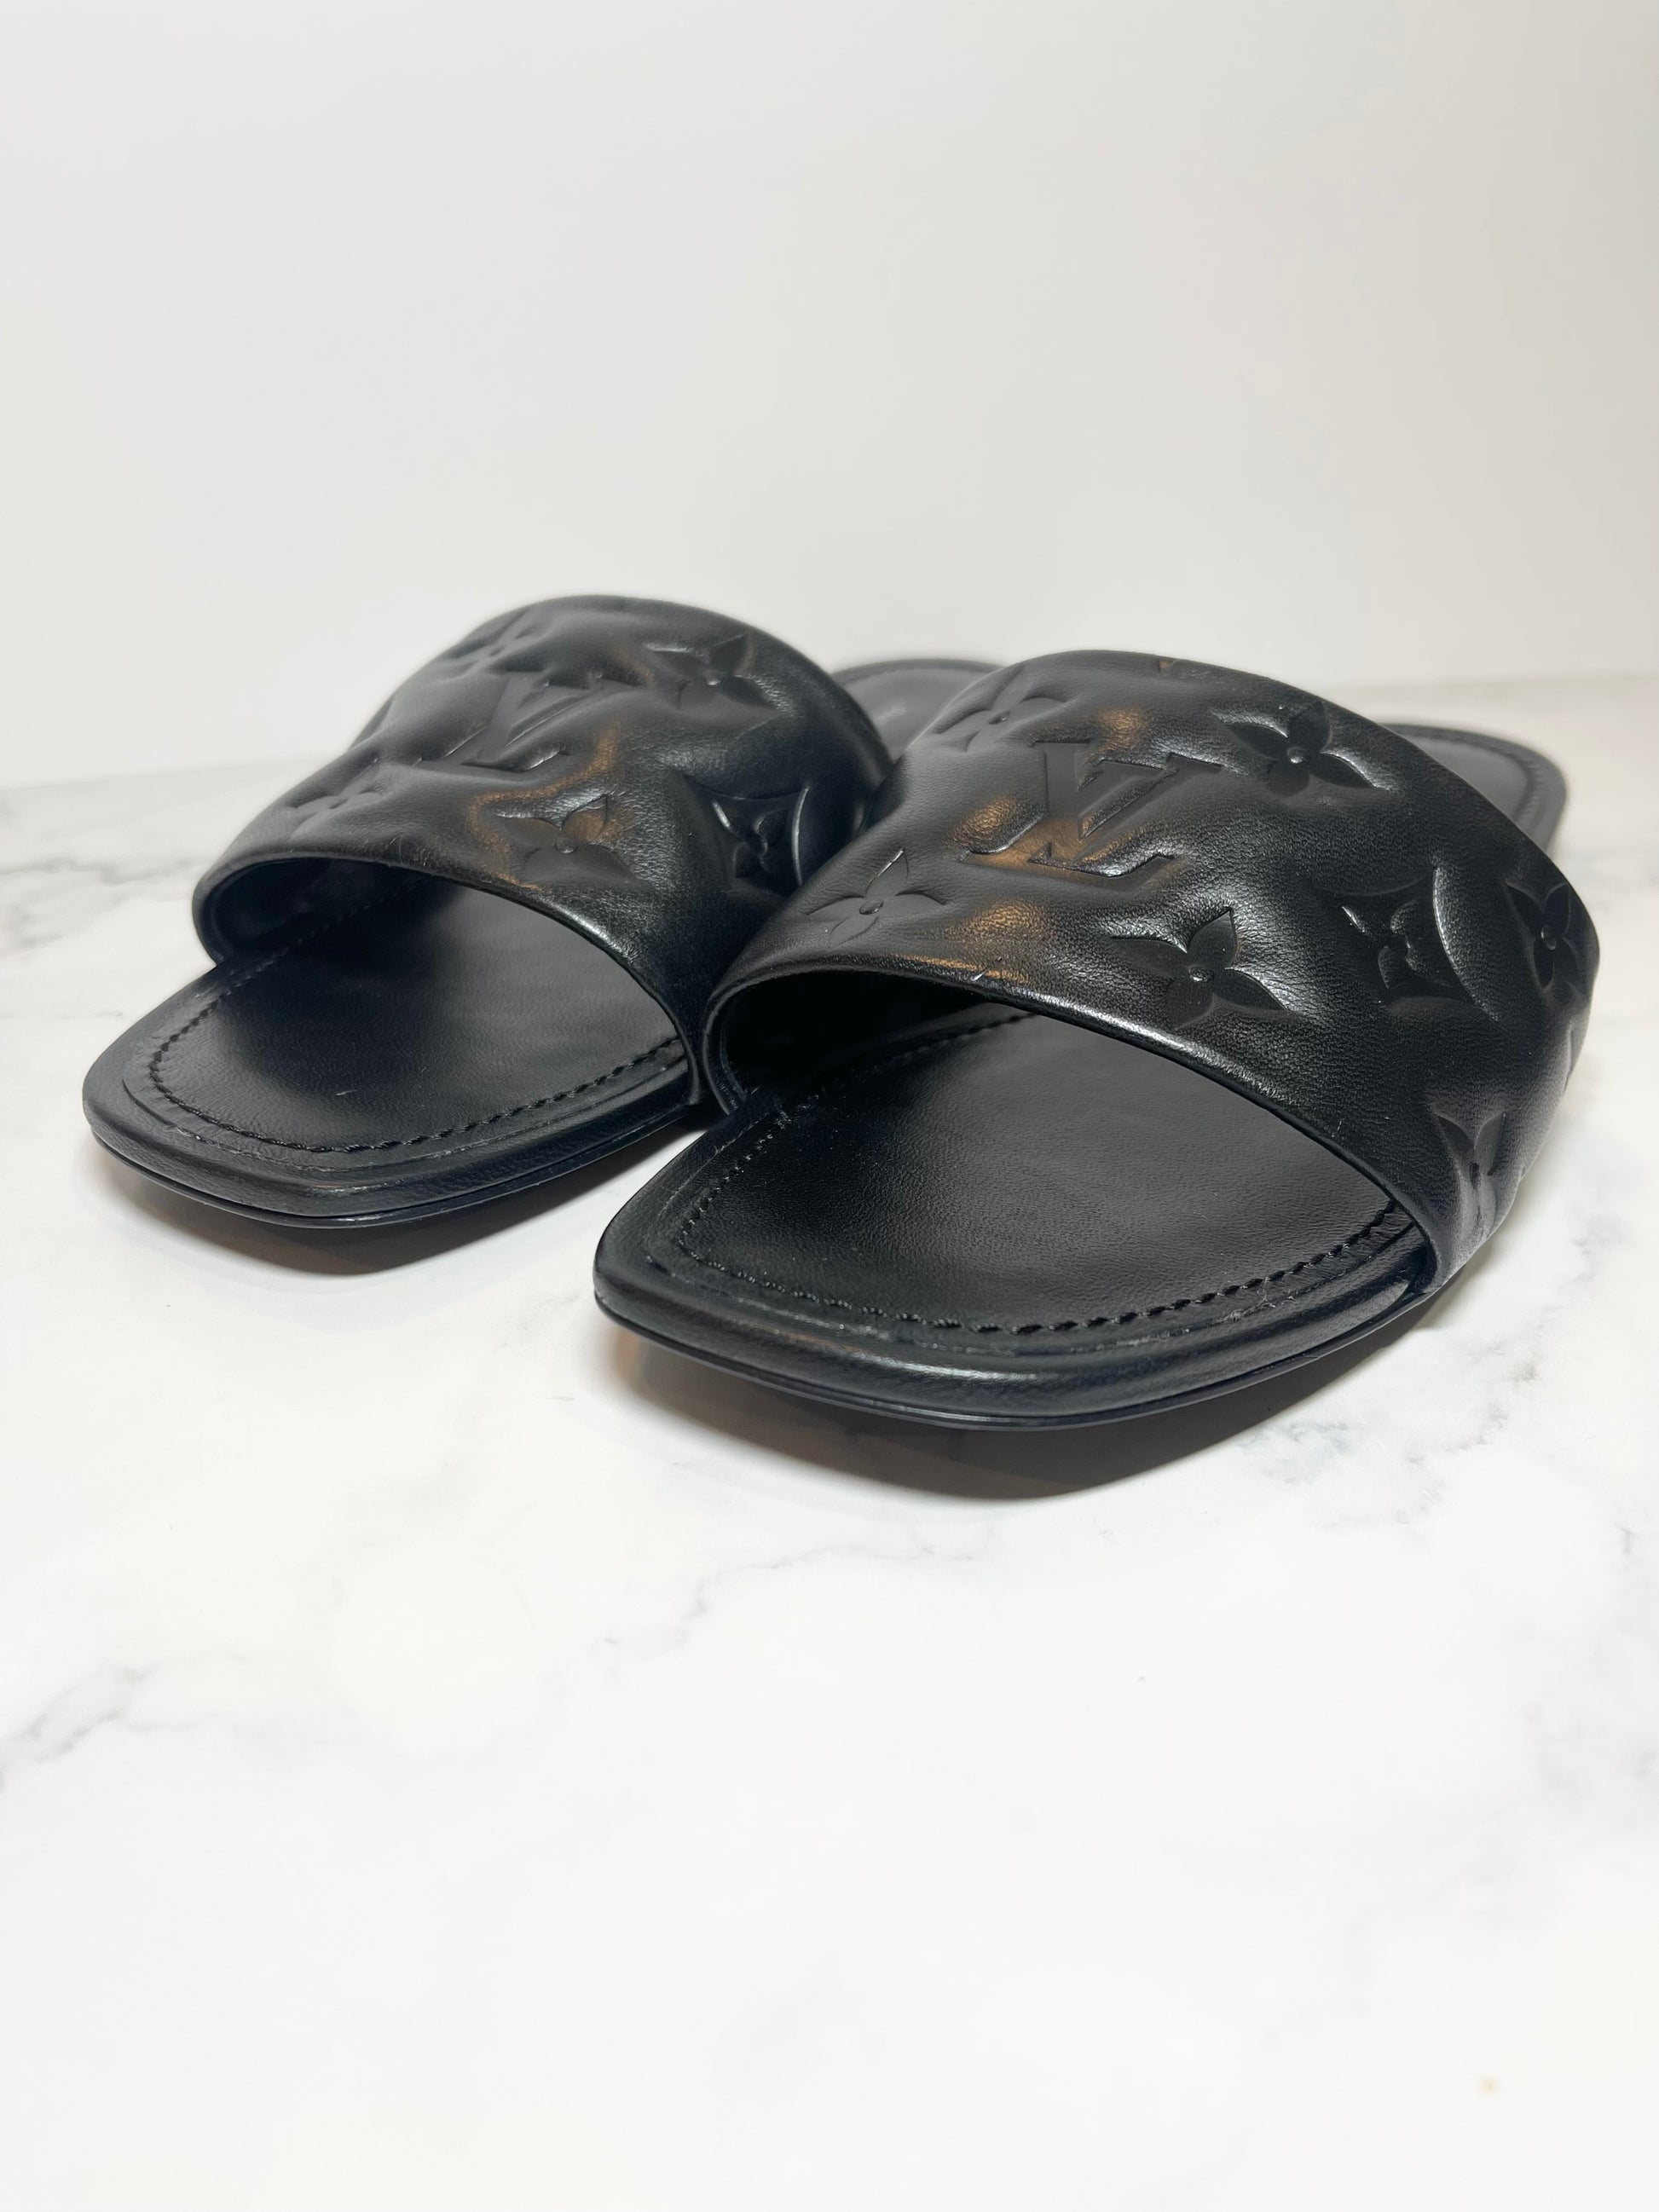 Louis Vuitton Revival Mule Nude Sandals Size 37 - BrandConscious